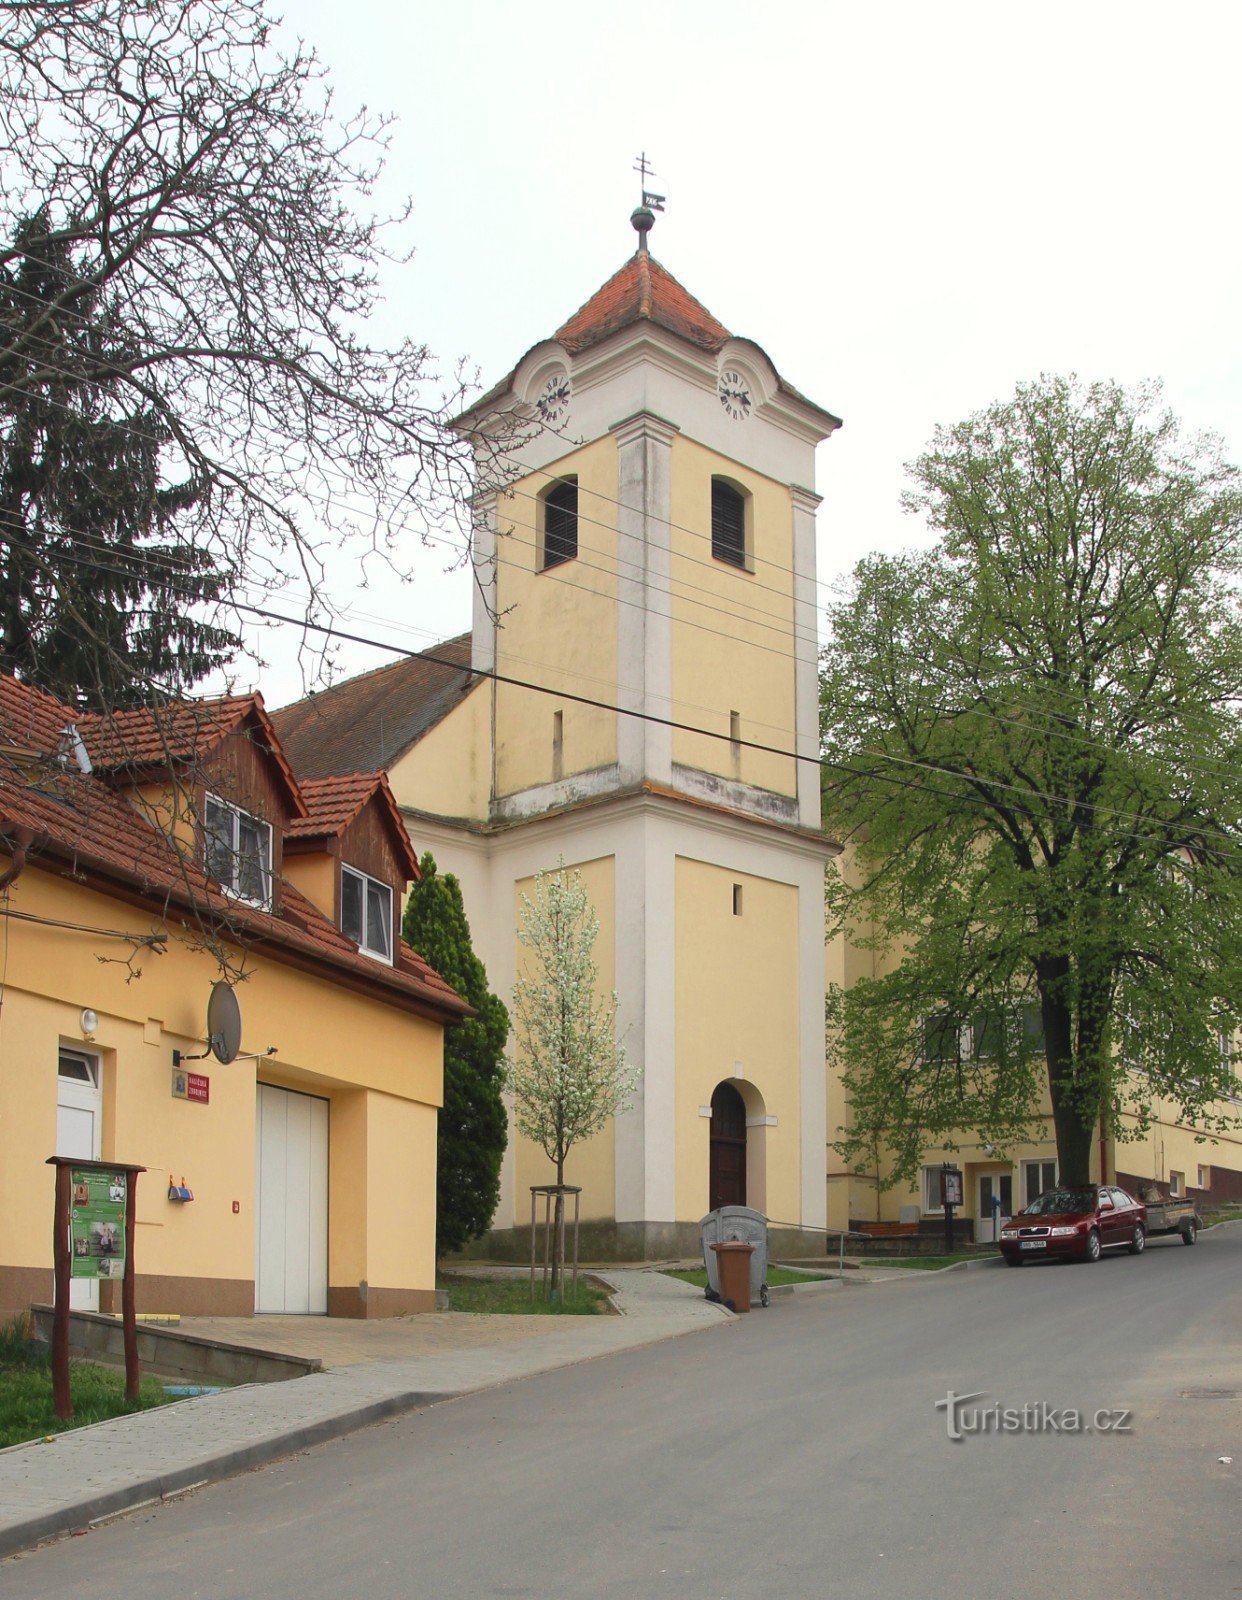 De kerk van de Visitatie van de Maagd Maria bevindt zich in het bovenste deel van het dorp